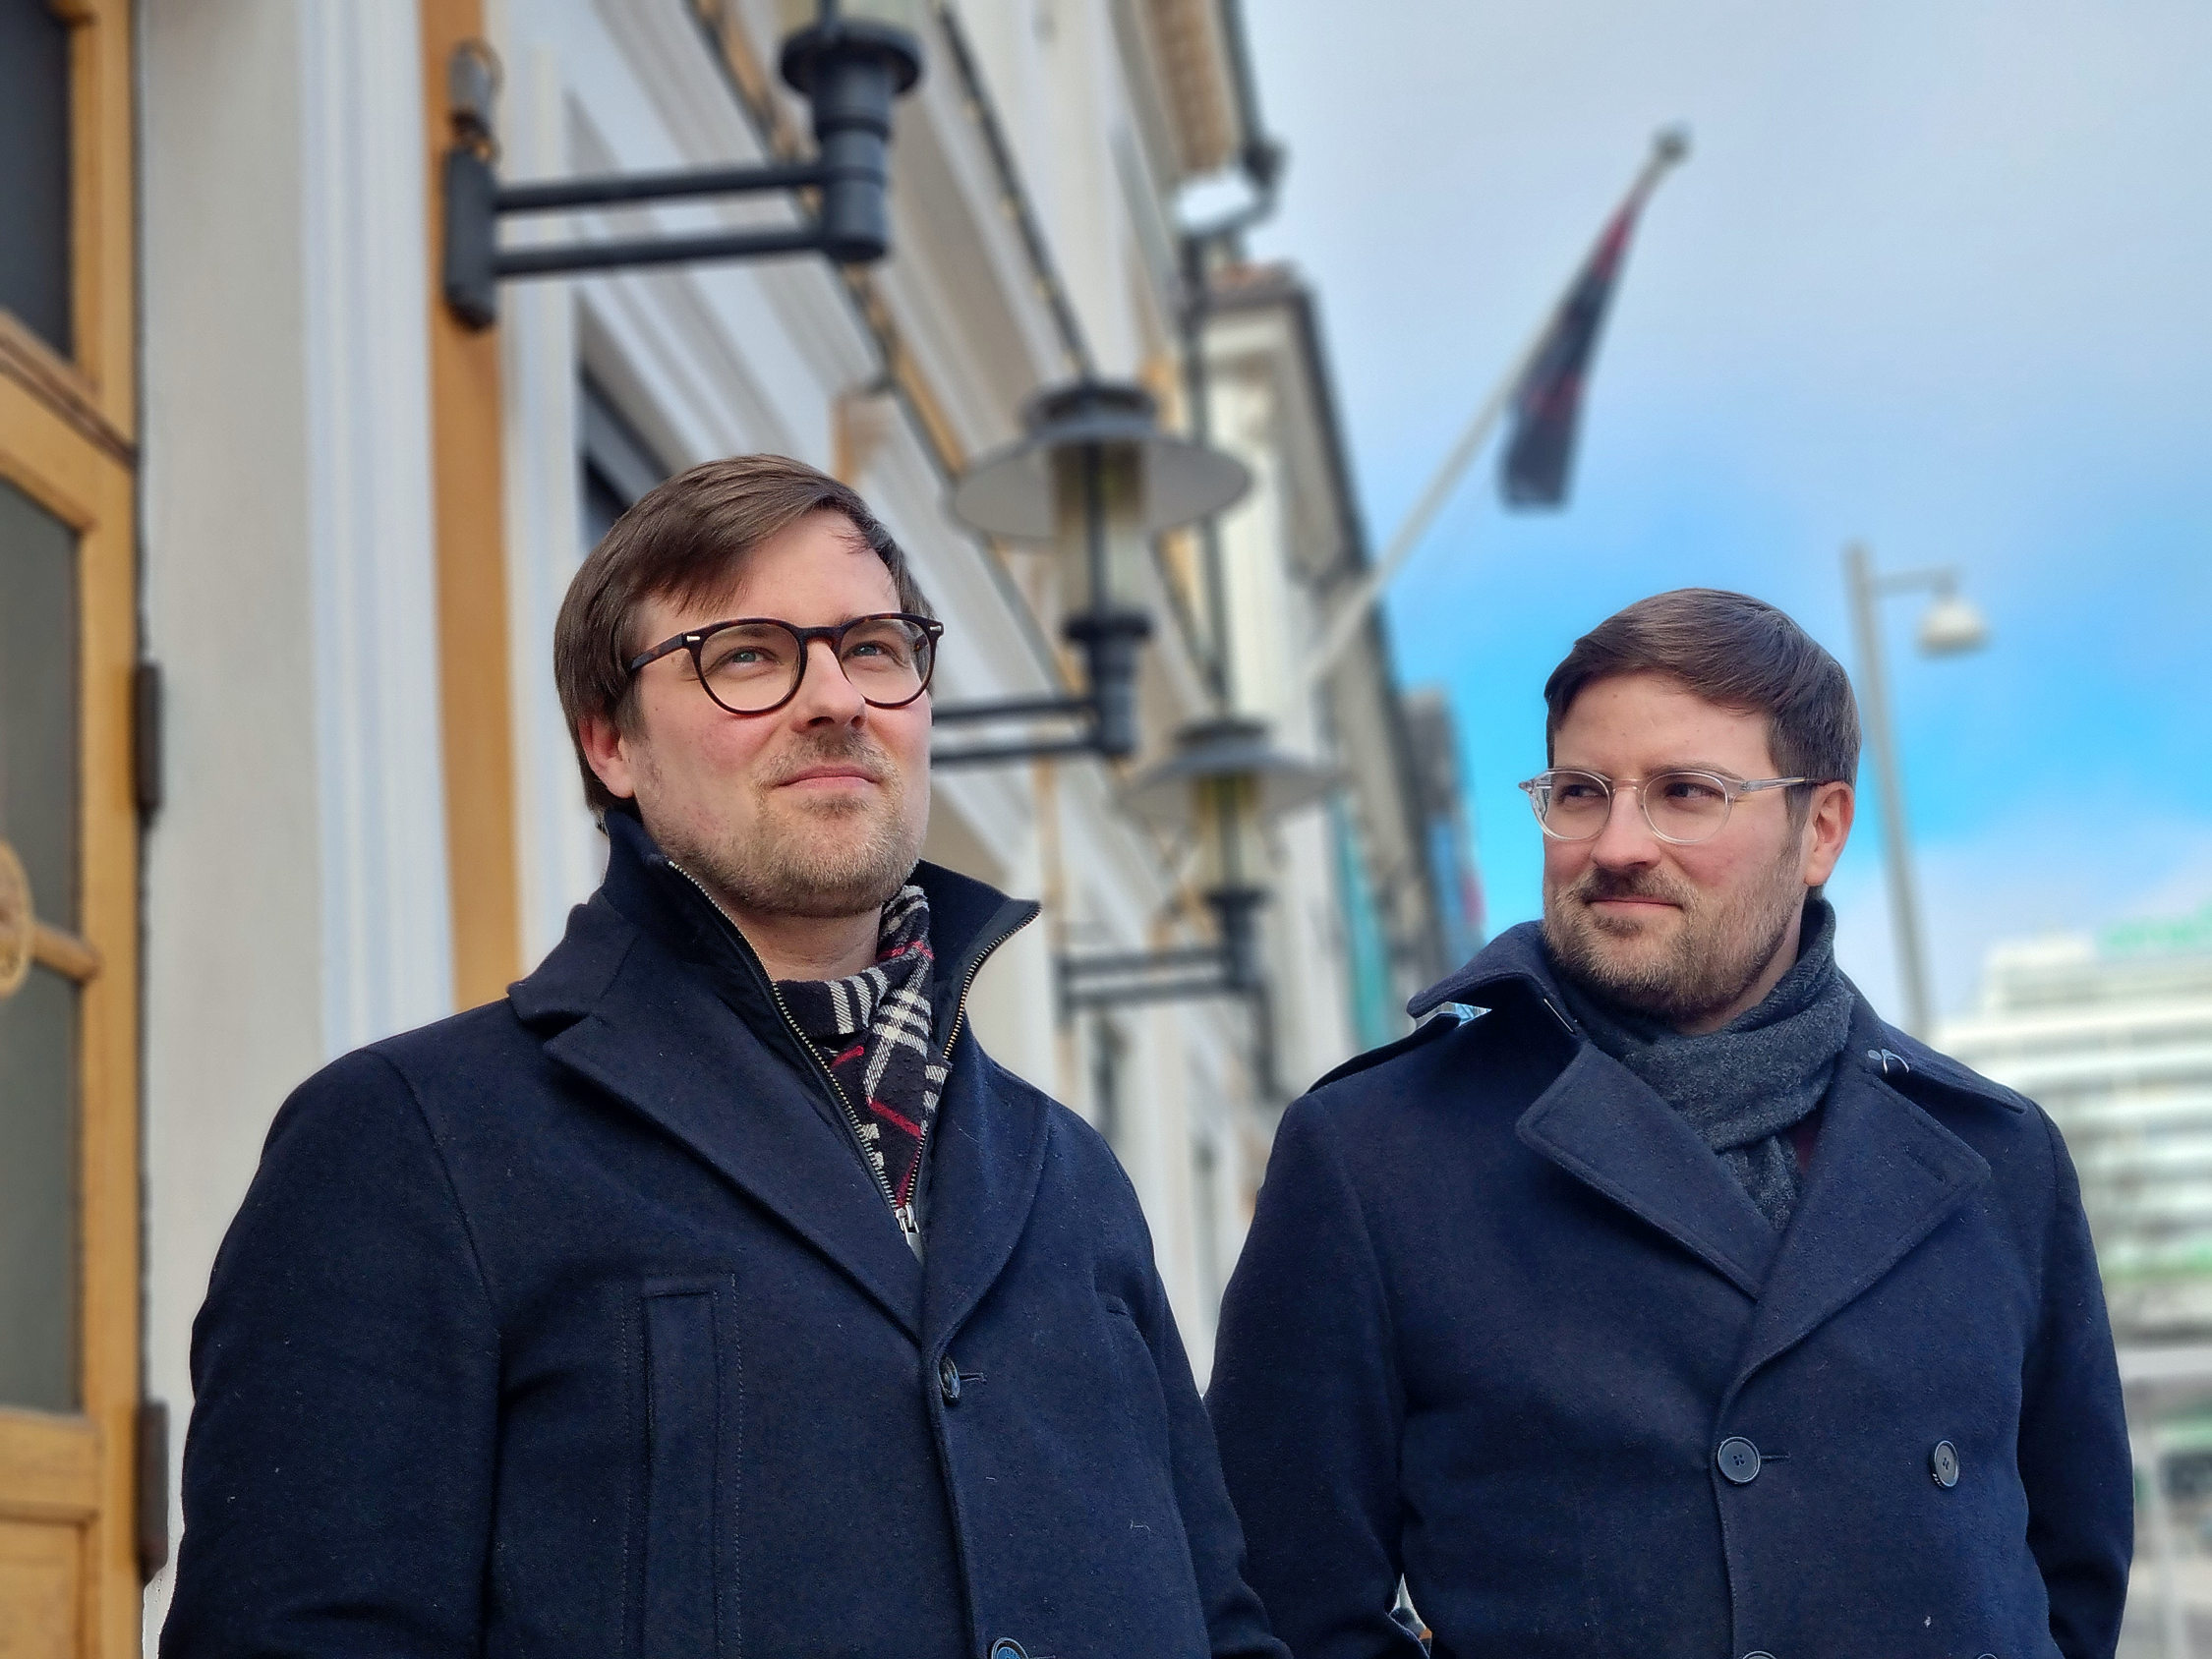 Två unga män utanför åbo Svenska teater